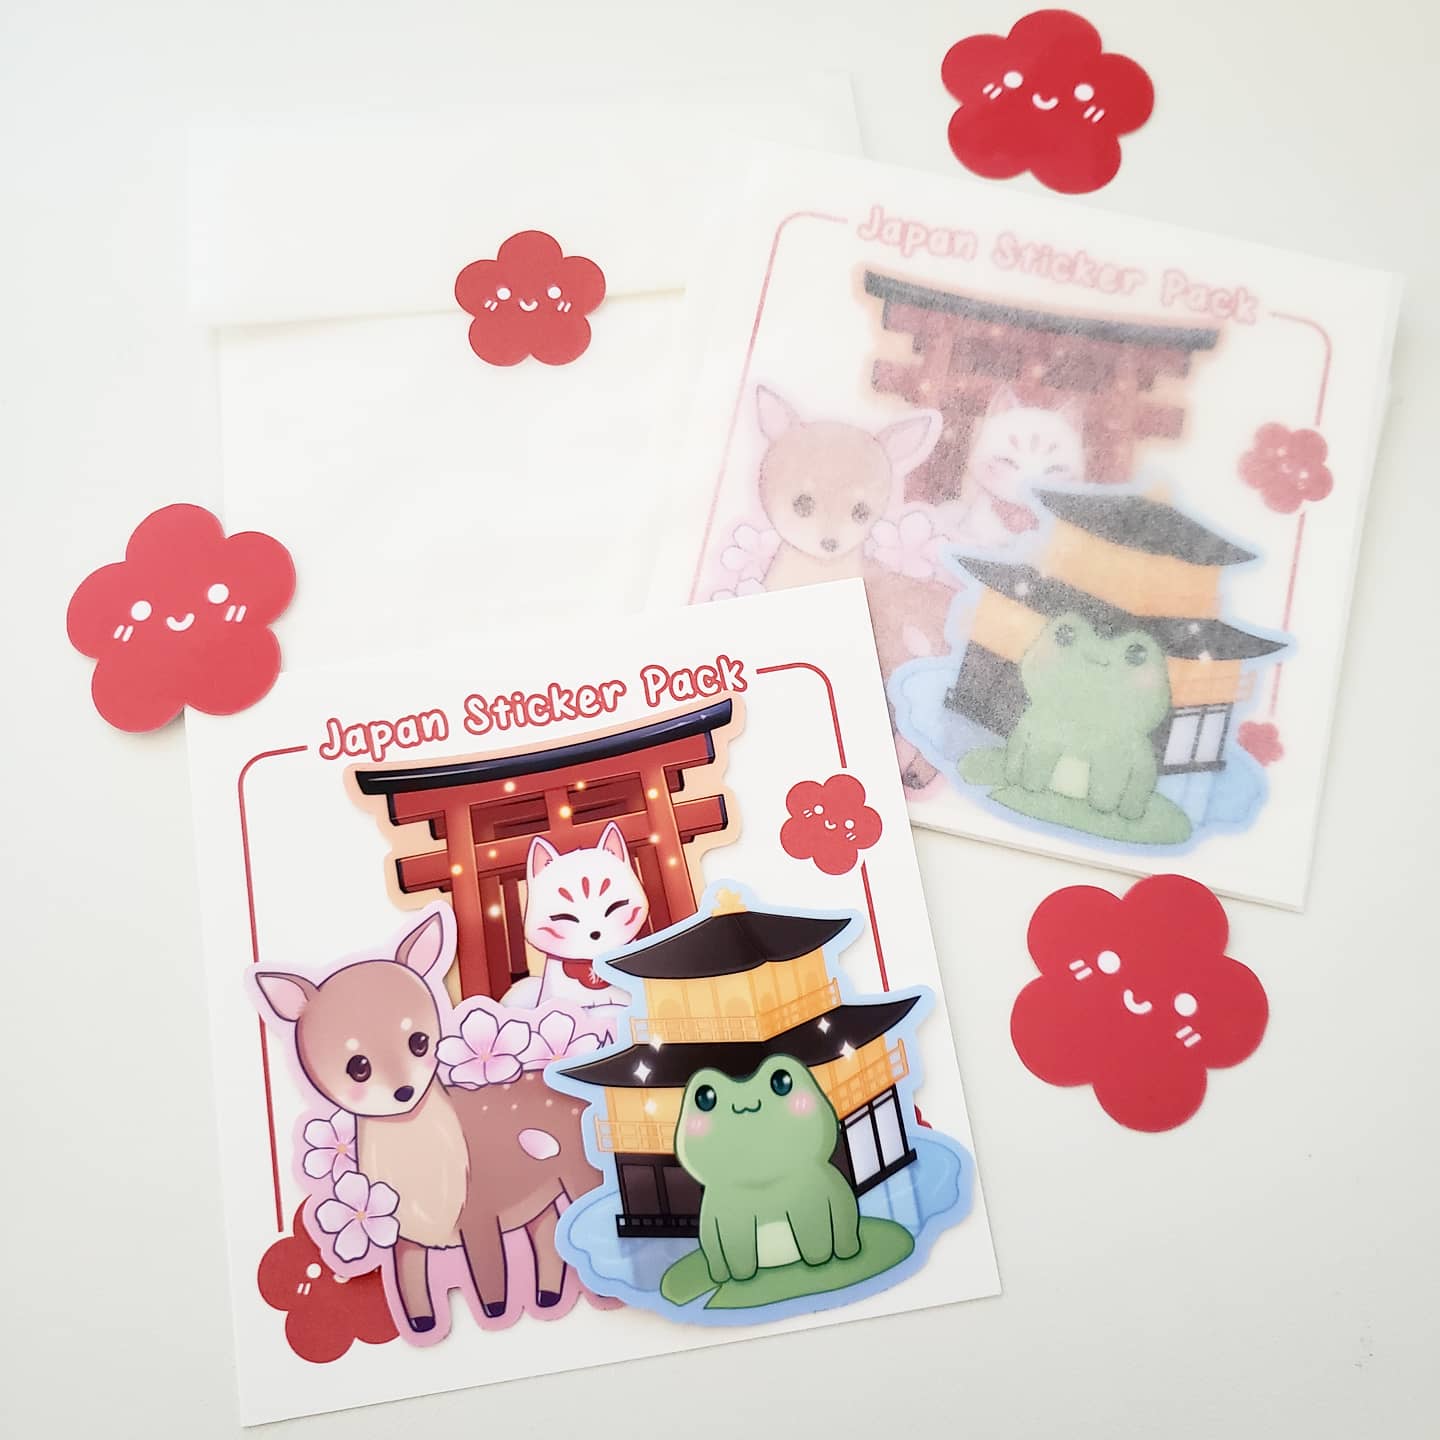 Japan Sticker Pack Bundle Deal (All 3)